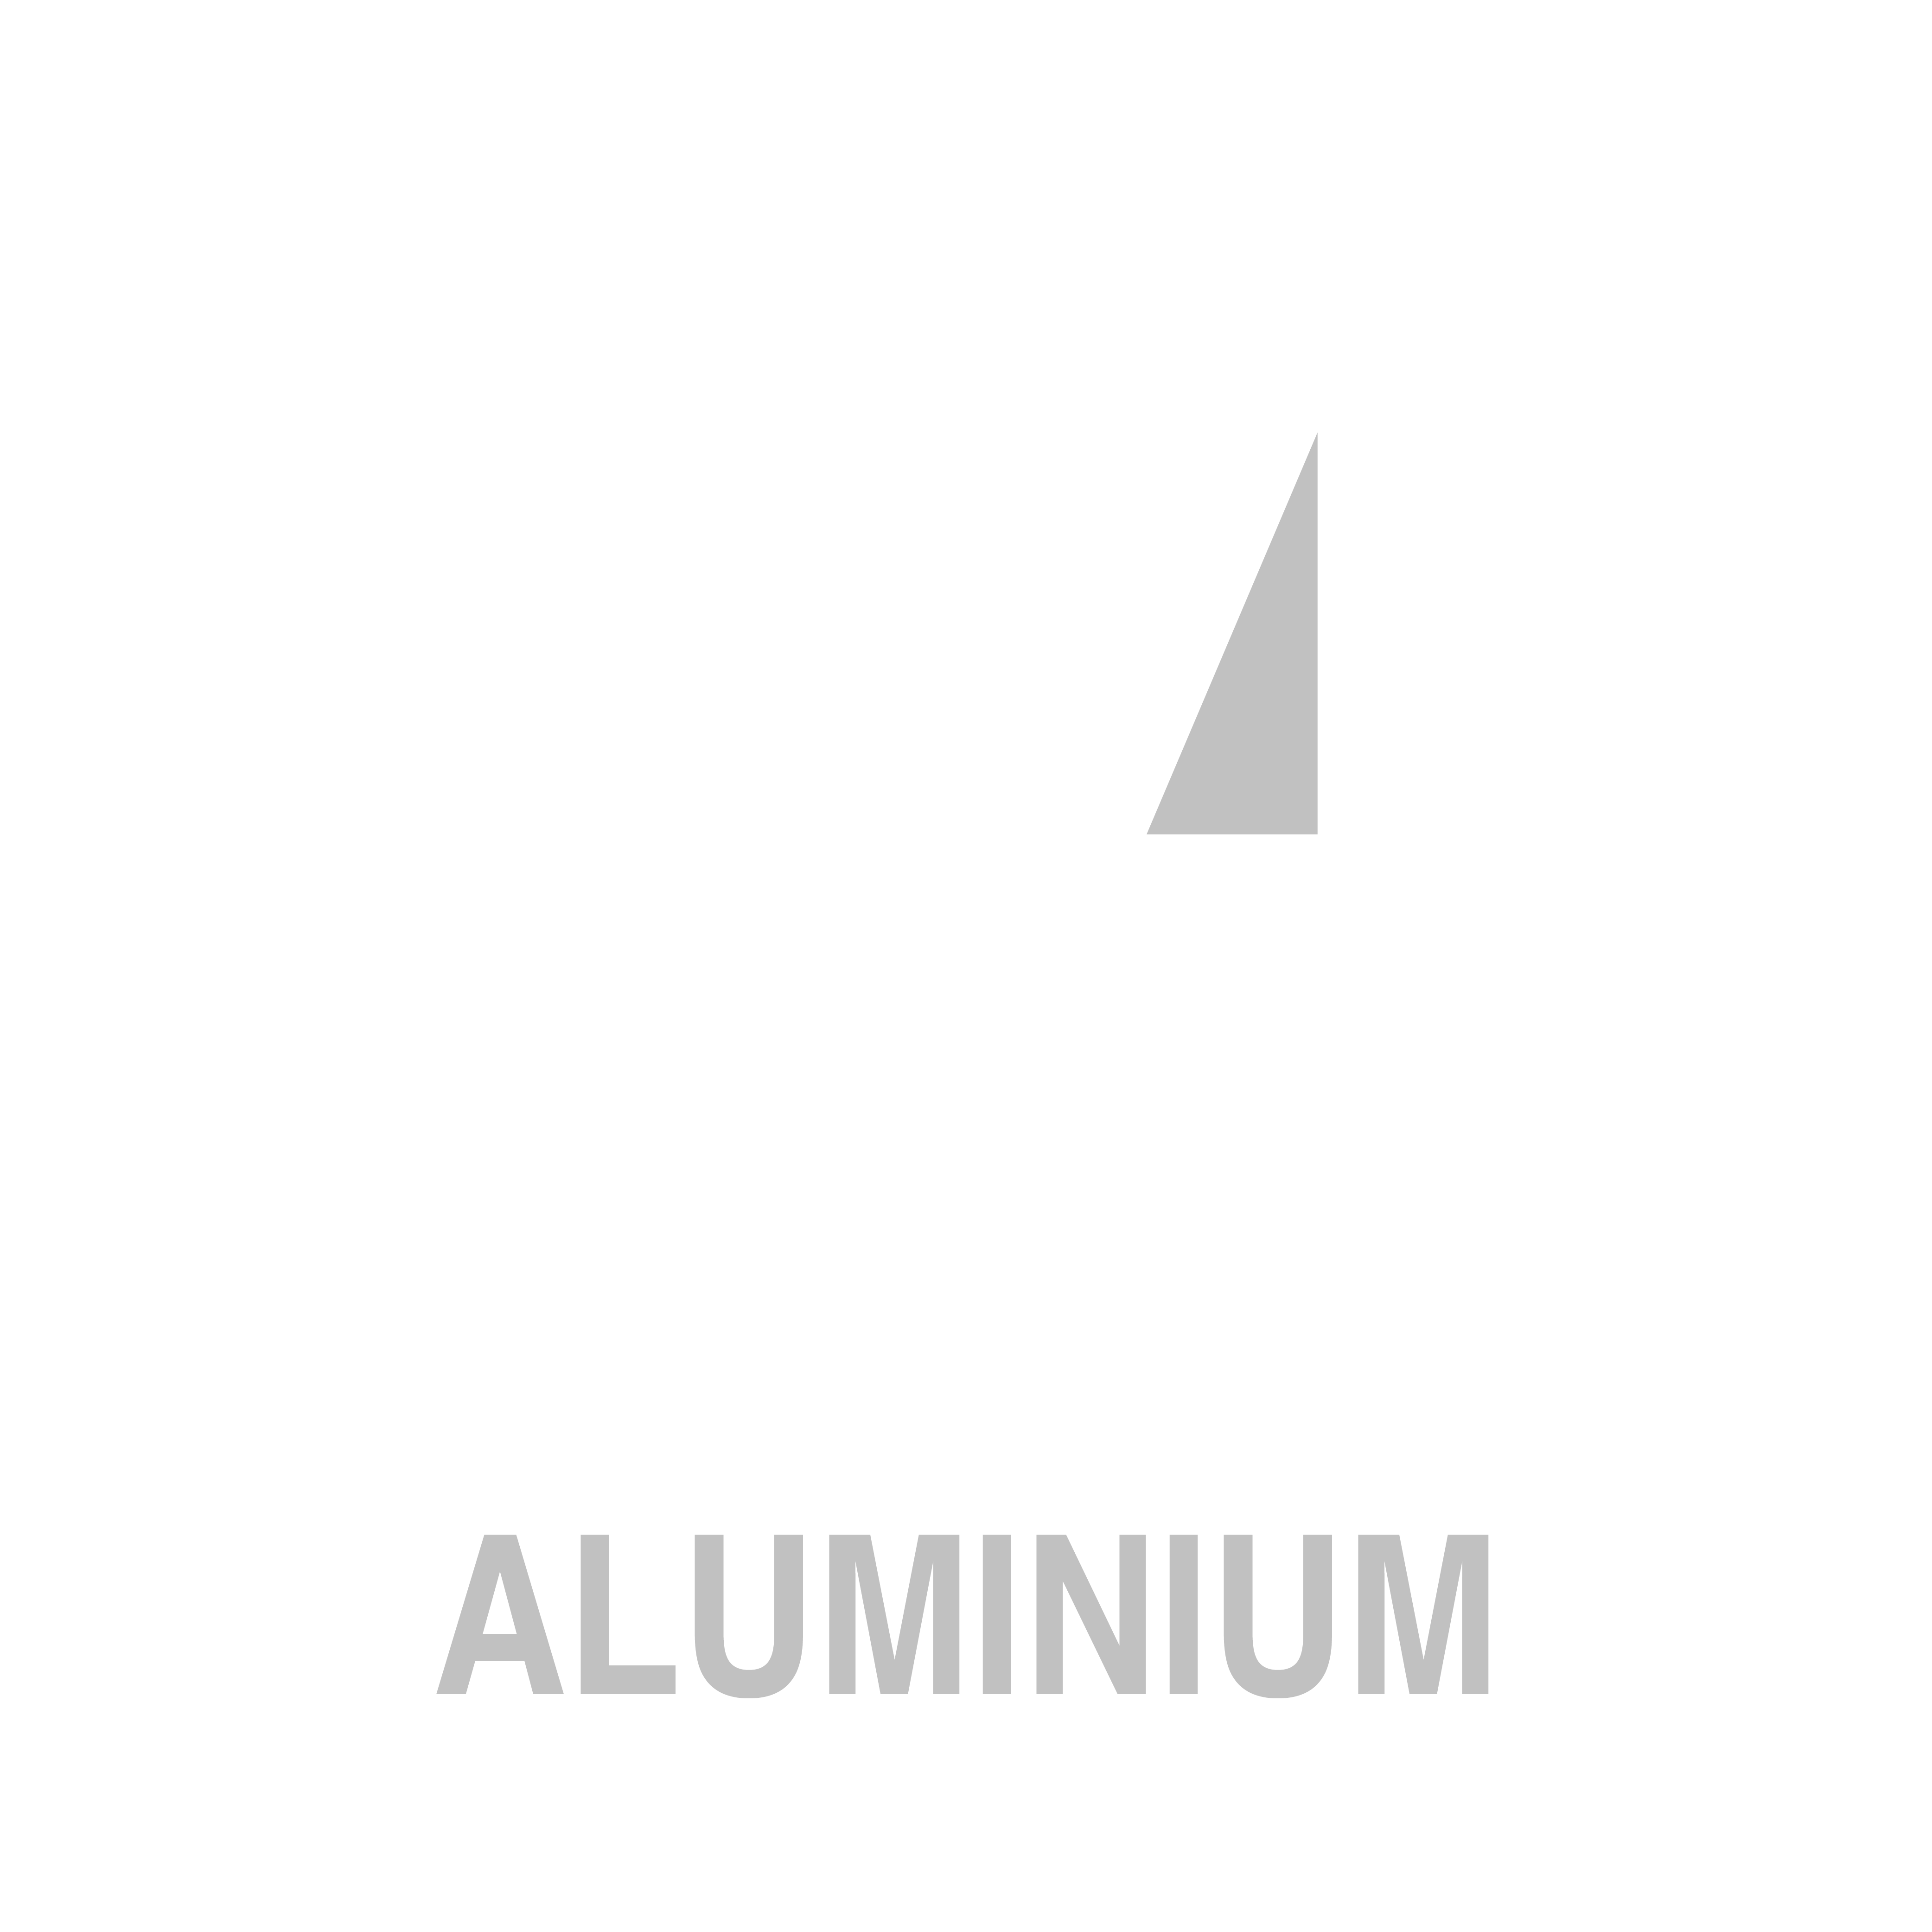 Harlor Aluminium-Logo